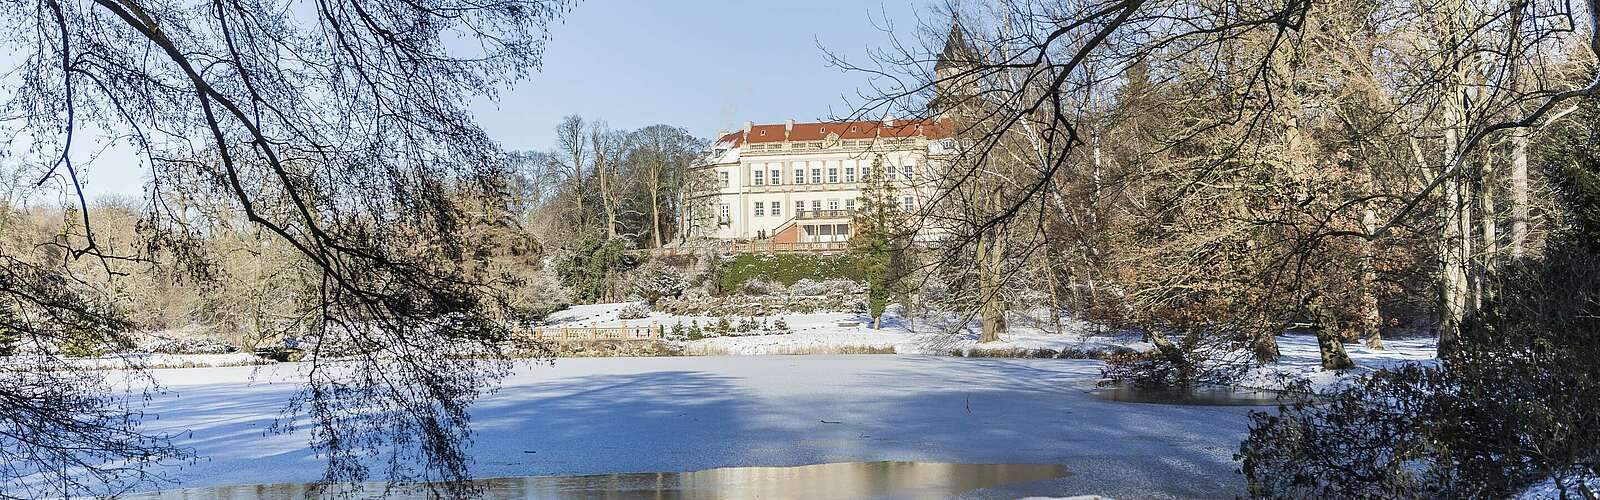 Schloss Wiesenburg im Winter,
        
    

        Foto: TMB-Fotoarchiv/Steffen Lehmann